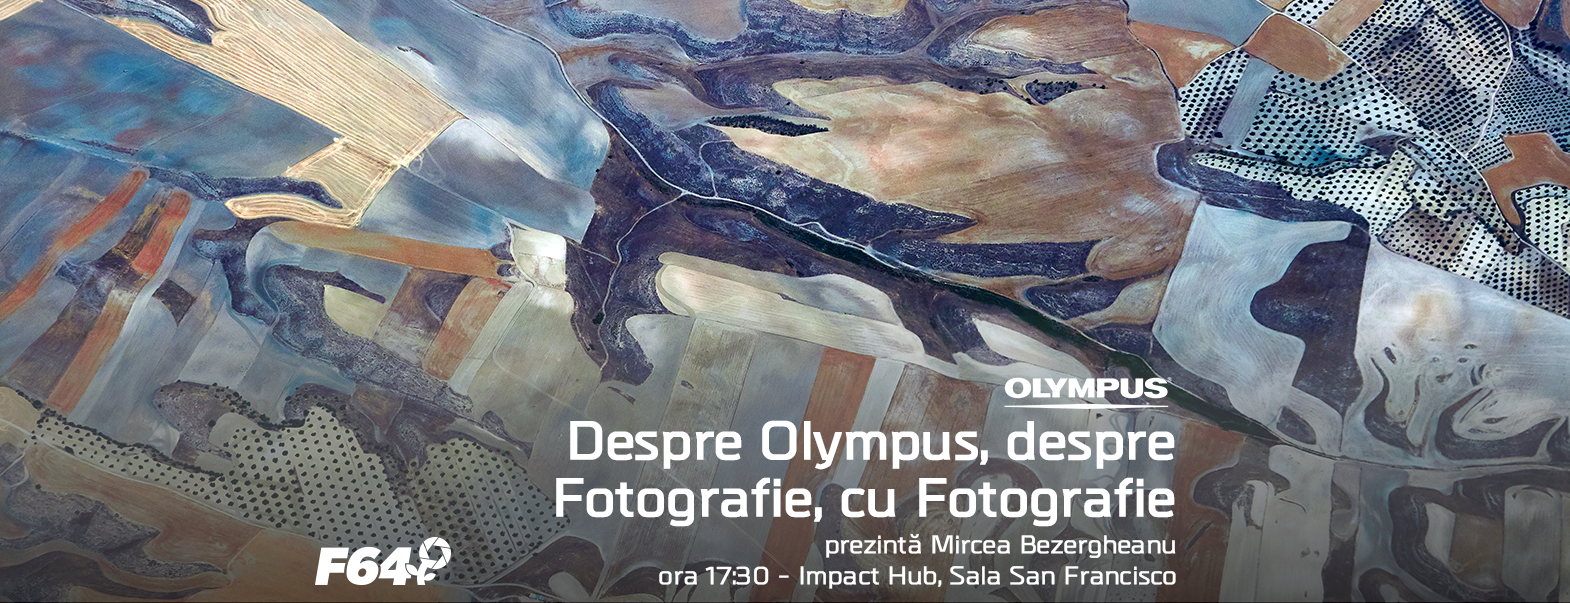  Un nou eveniment Olympus cu Mircea Bezergheanu